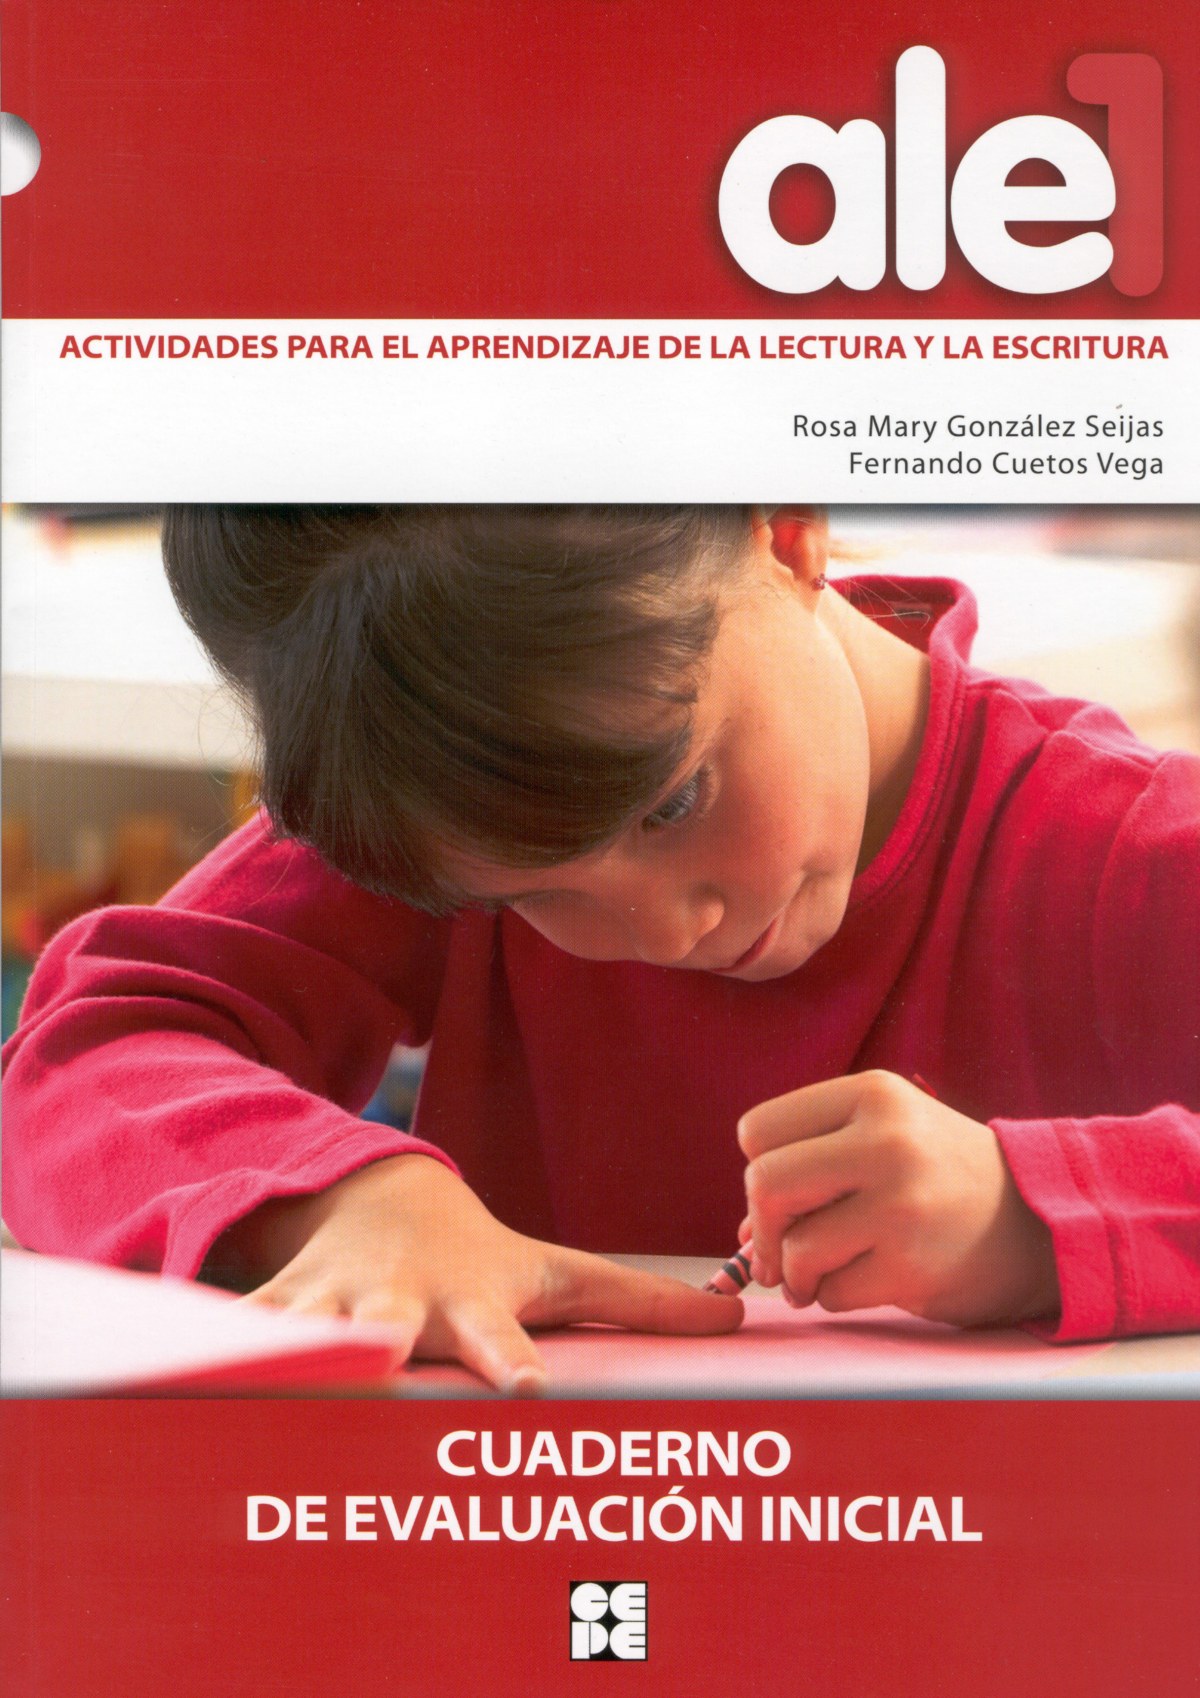 Ale1.actividades para el aprendizaje lectura y escritura - González Seijas, Rosa/Cuetos Vega, Fernando